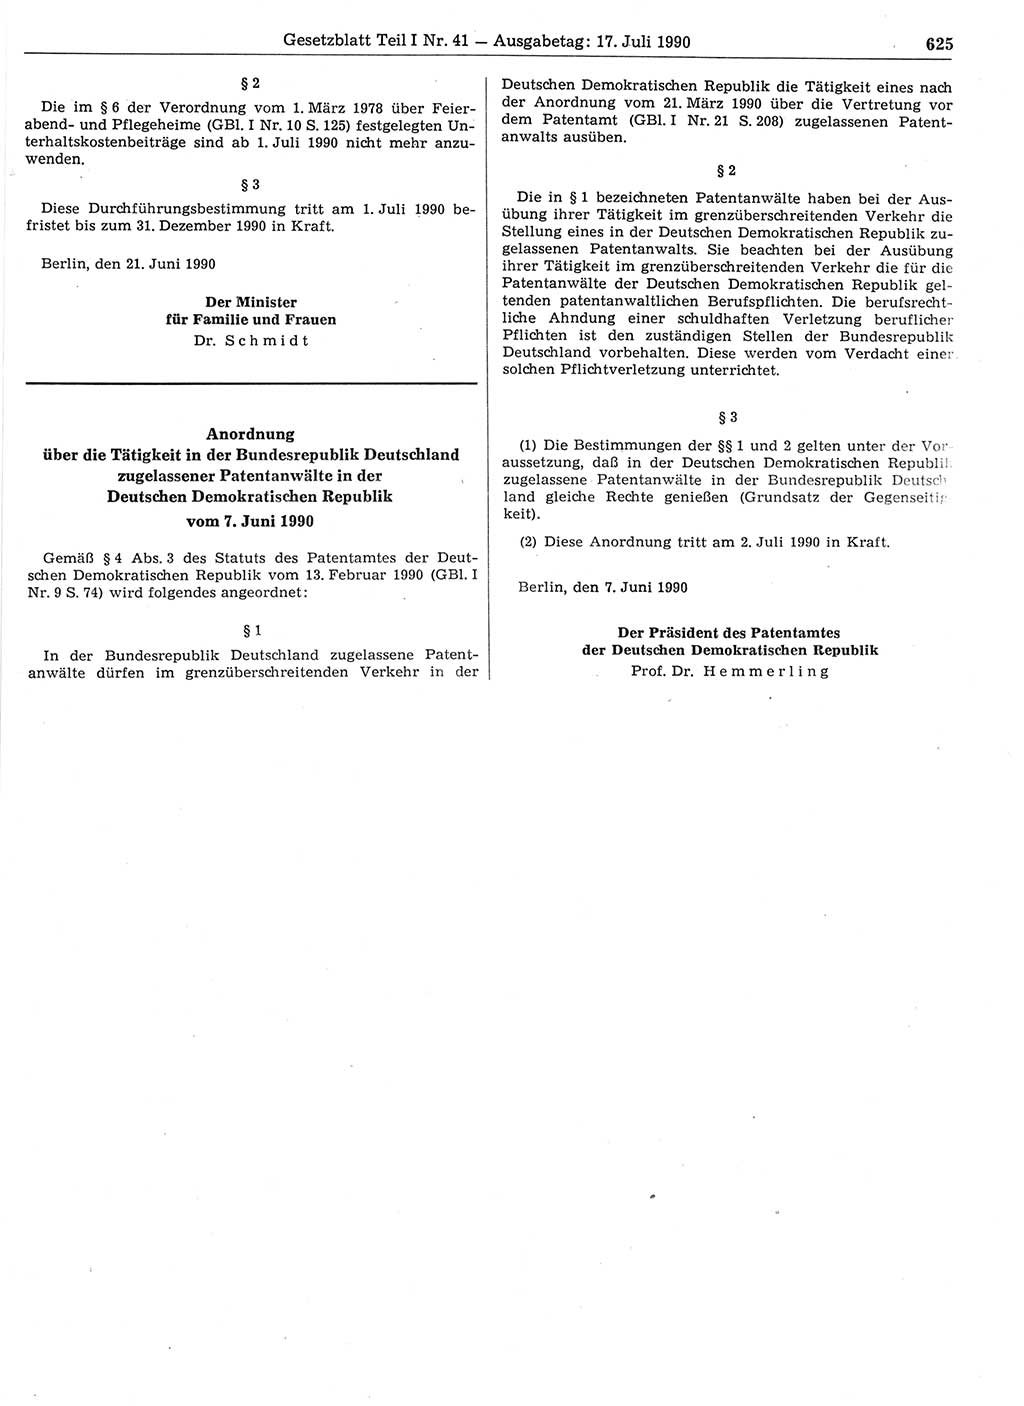 Gesetzblatt (GBl.) der Deutschen Demokratischen Republik (DDR) Teil Ⅰ 1990, Seite 625 (GBl. DDR Ⅰ 1990, S. 625)